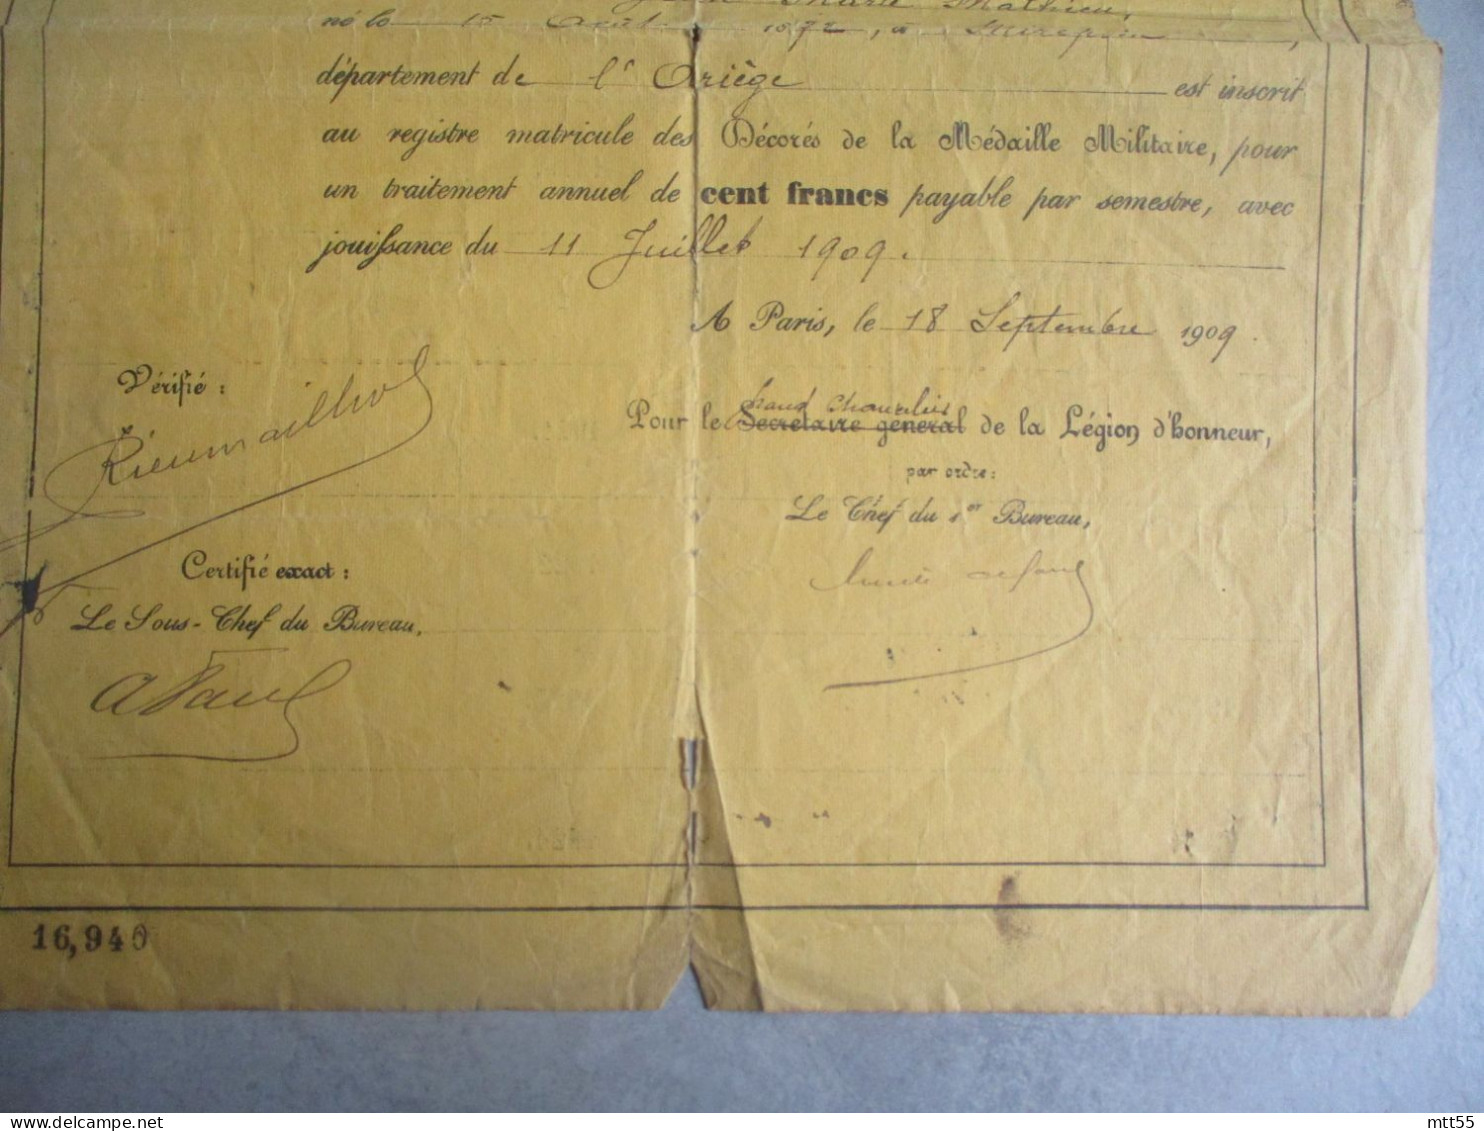 TRAITEMENT DE LA MEDAILLE MILITAIRE CERTIFICATION INSCRIPTION 1909 - Historische Documenten